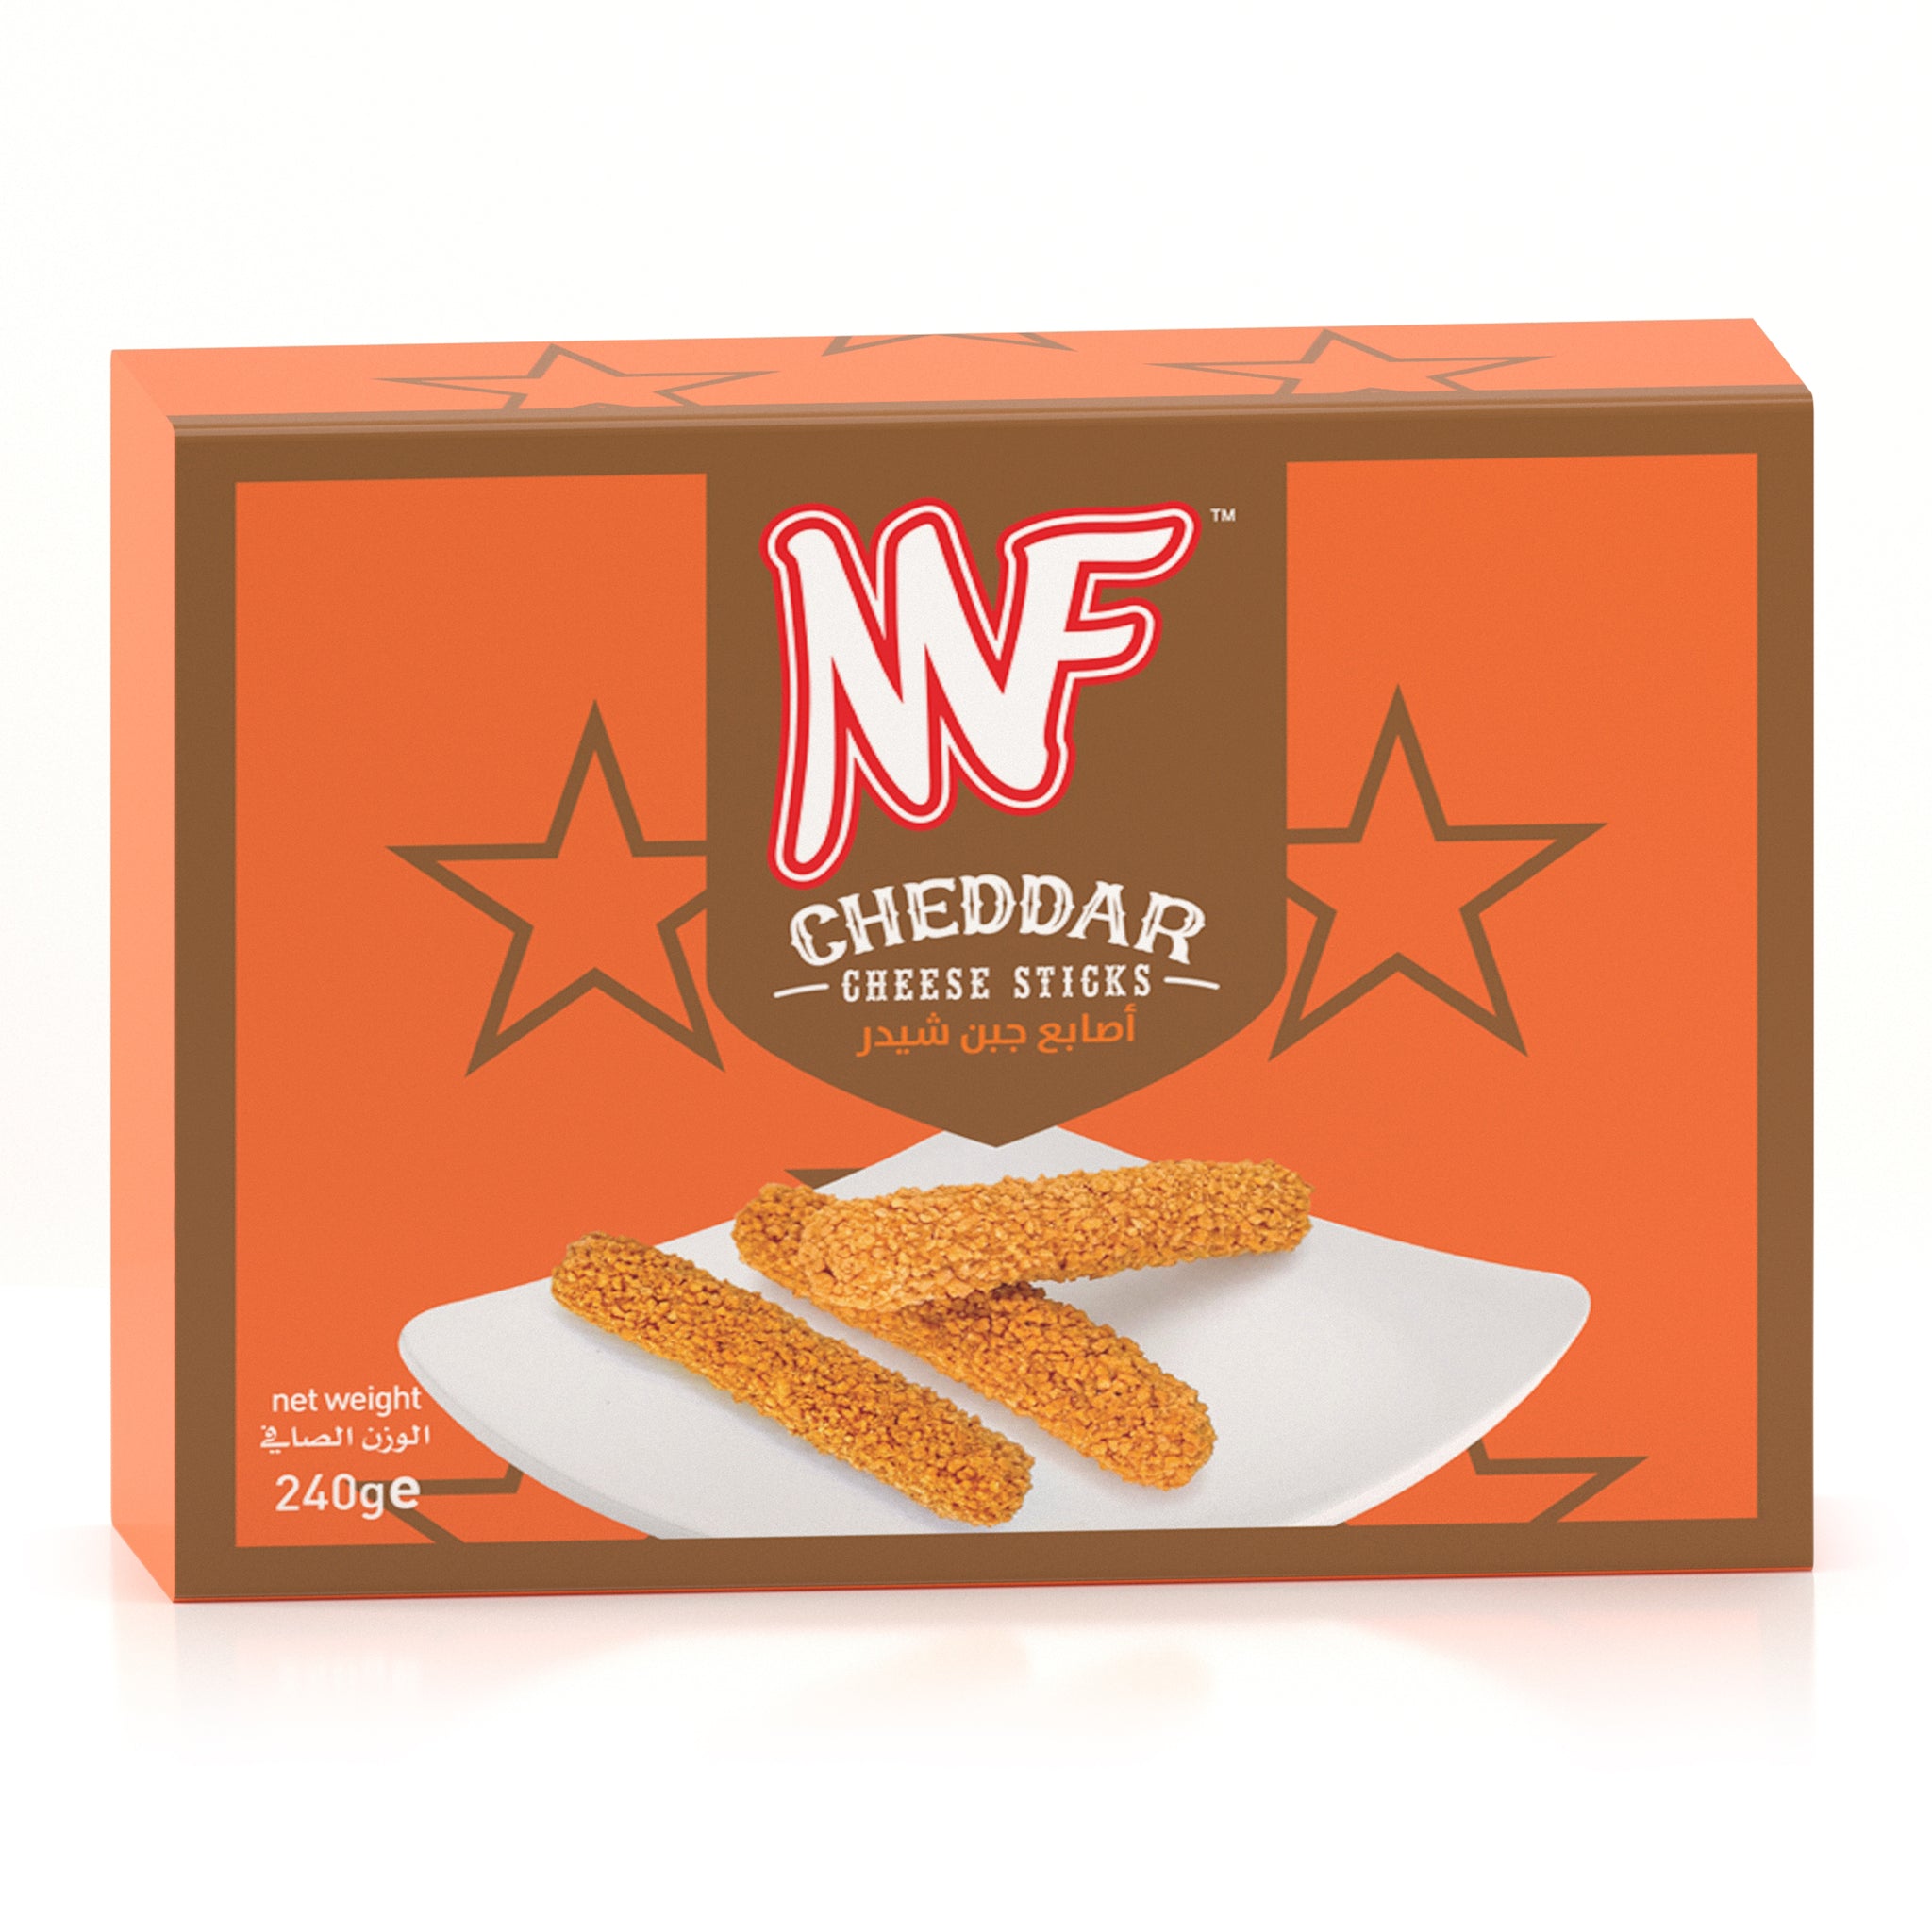 MF Cheddar Cheese Sticks 240g